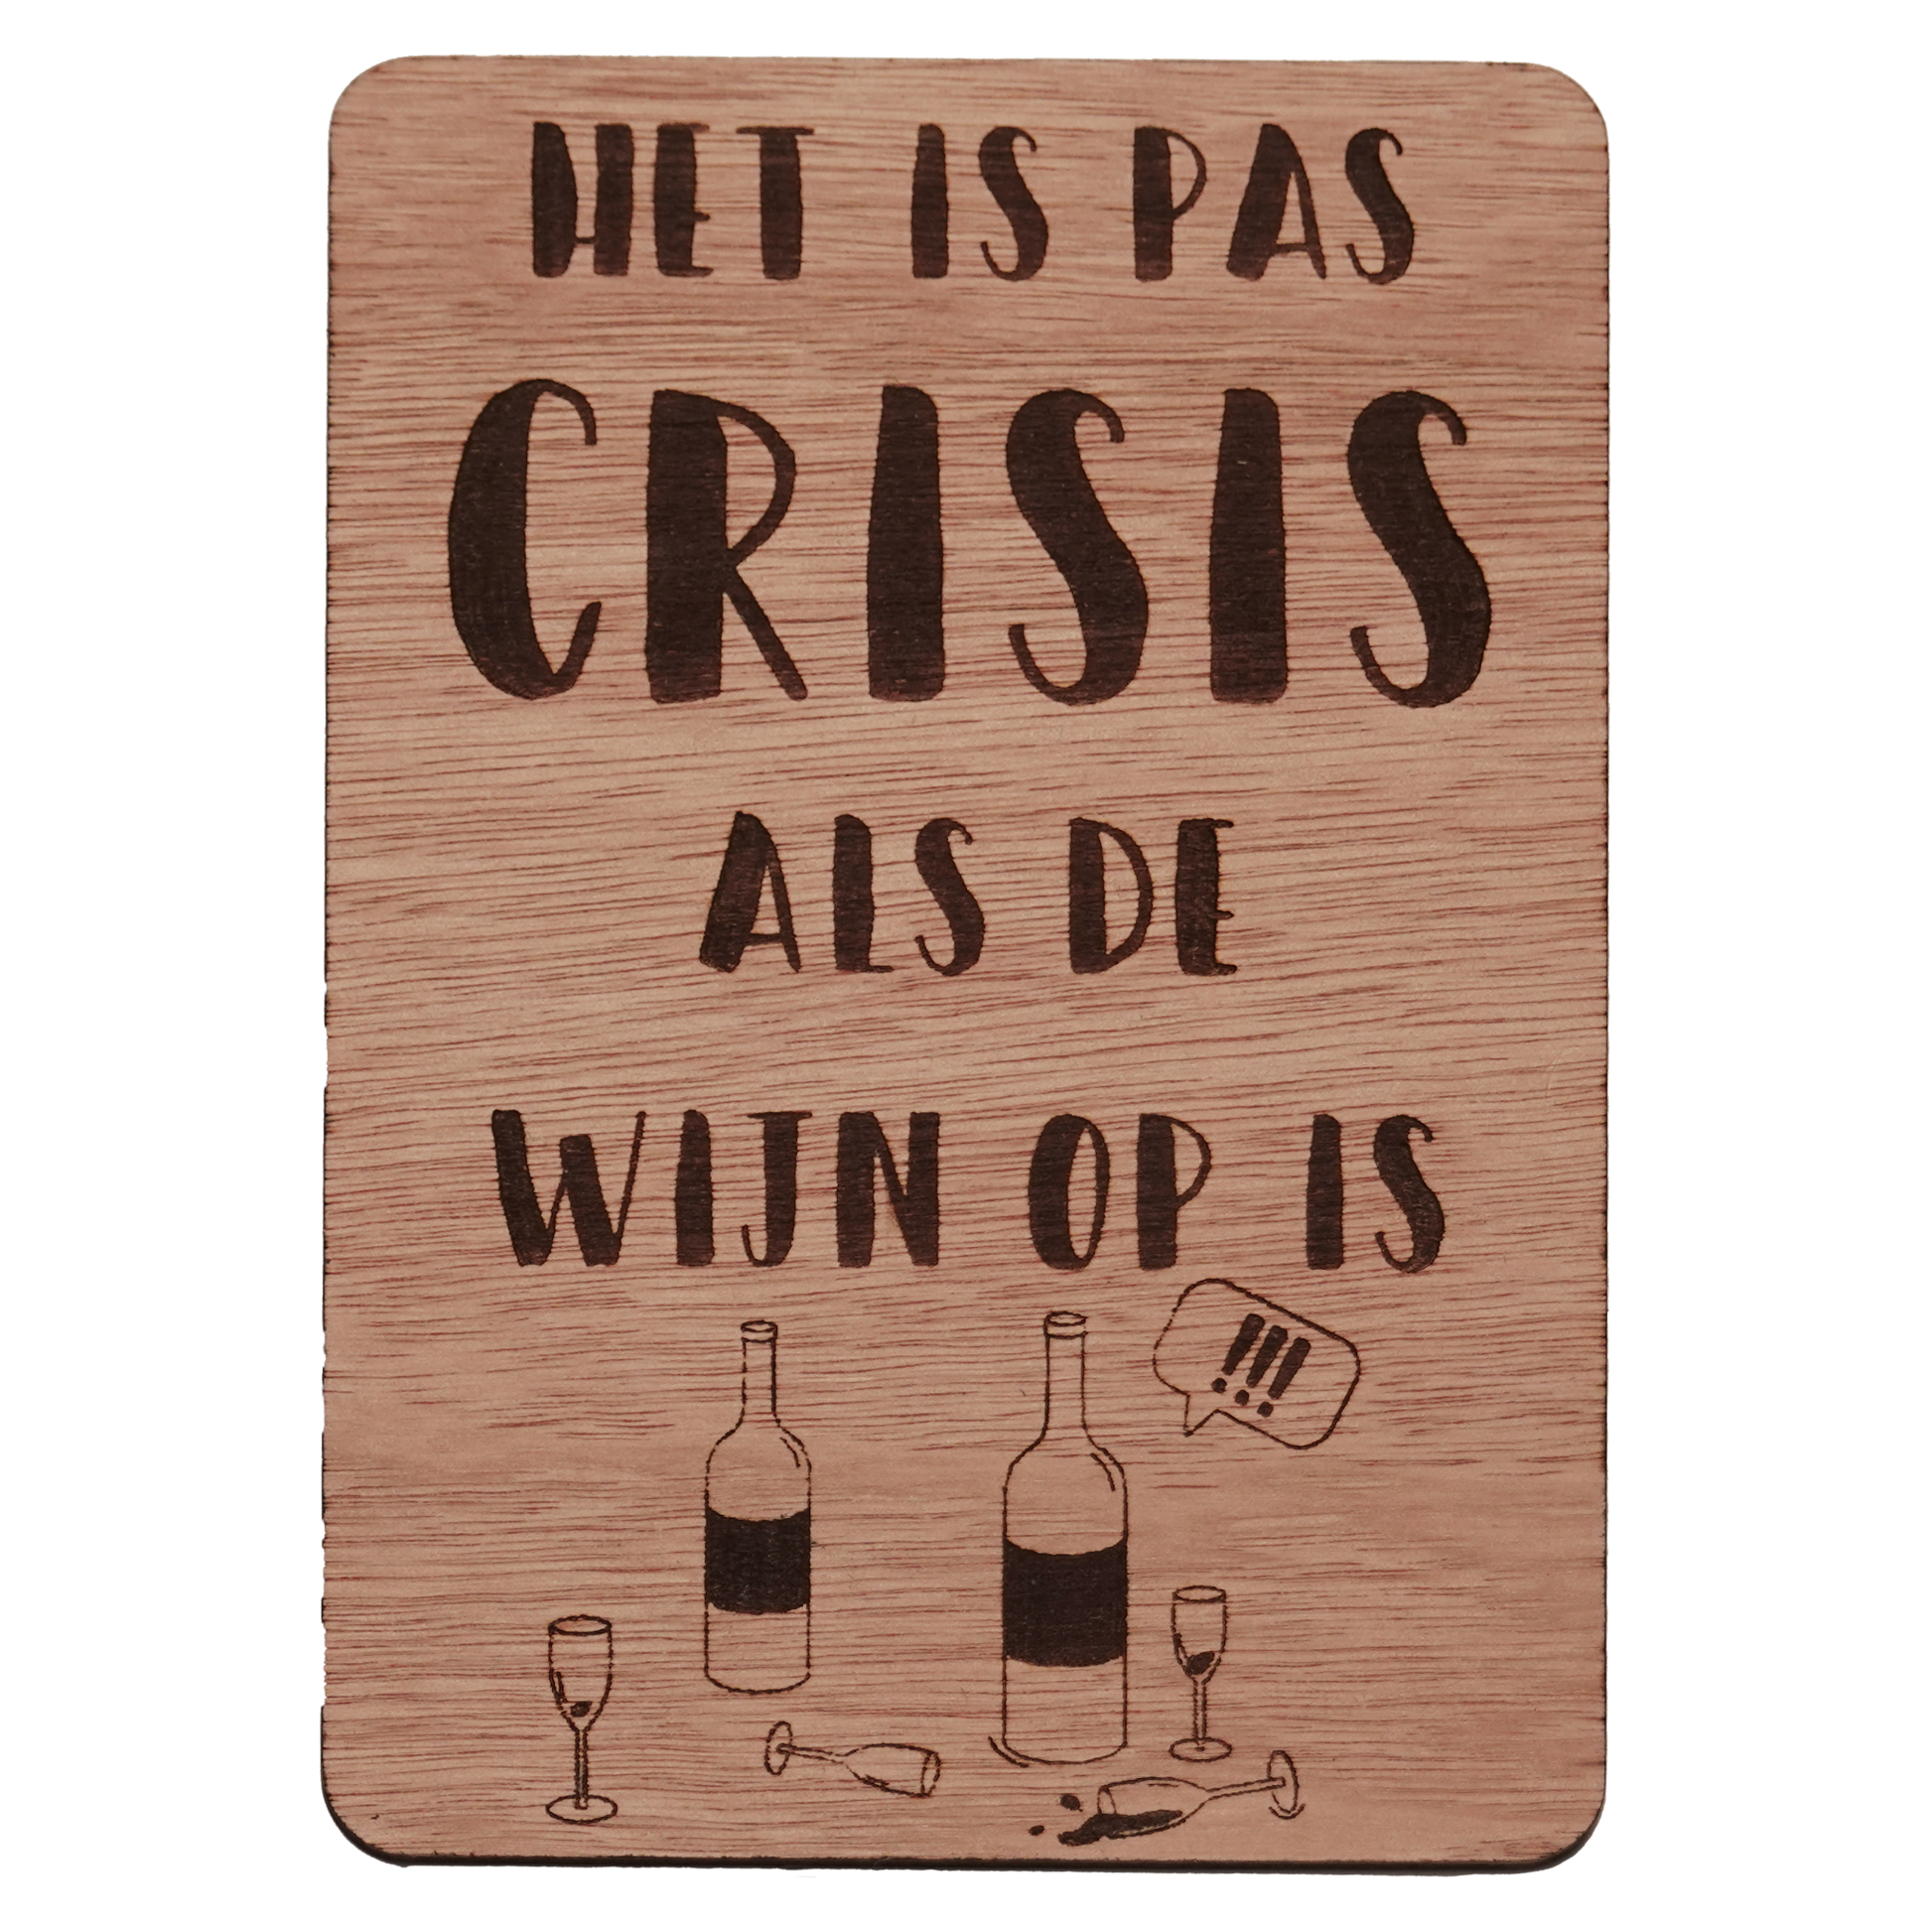 Houten wenskaart waar "het is pas crisis als de wijn op is" op gegraveerd staat. Onder op de kaart staat een grappige illustratie van twee lege wijnflessen en vier lege wijnglazen. Twee van de glazen zijn omgevallen. 